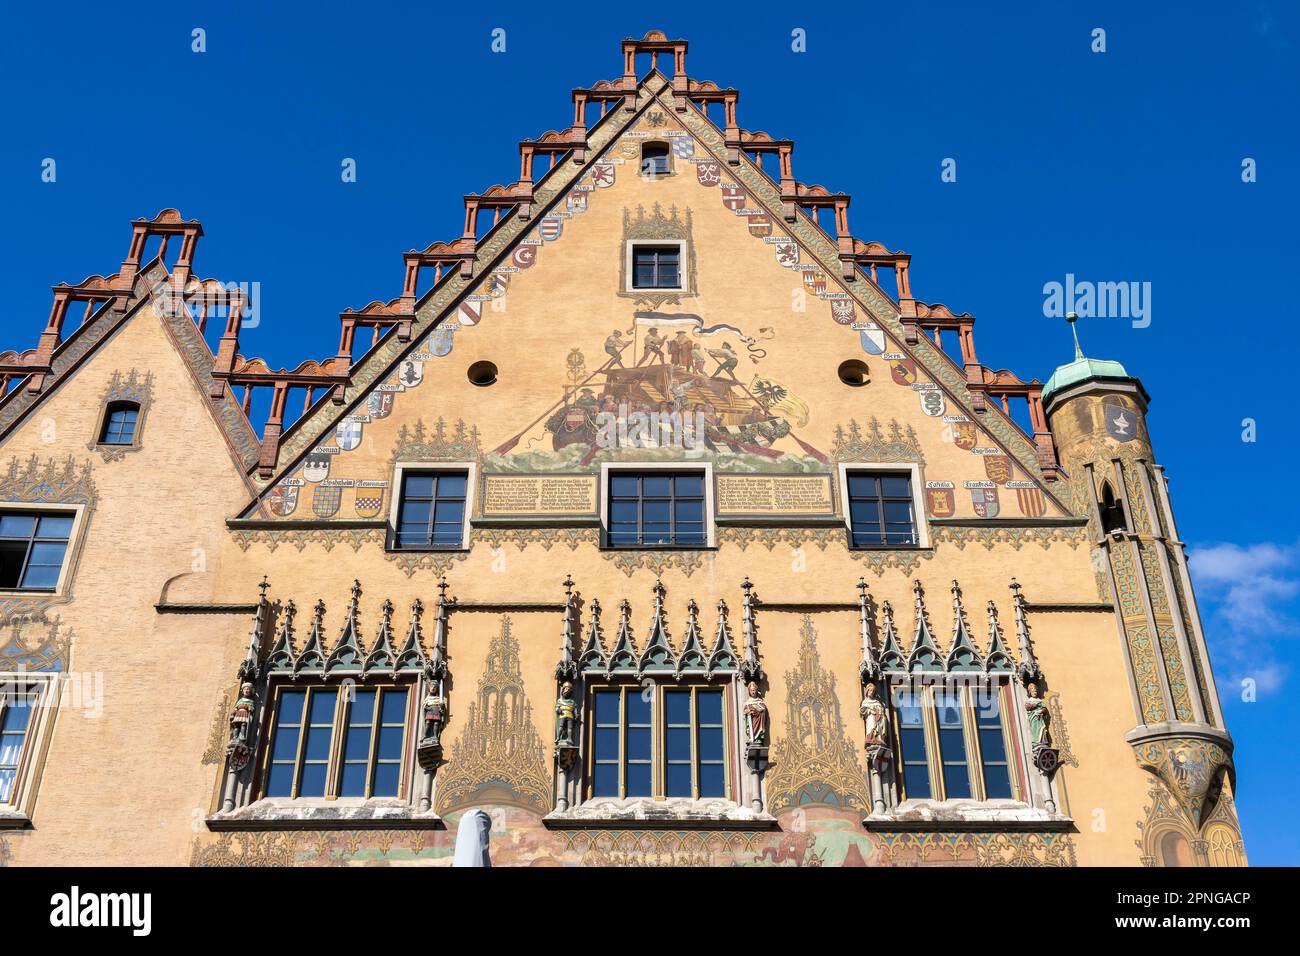 Oberer Teil des Rathauses von Ulm mit kunstvoll verzierten Fenstern mit sechs Wählerfiguren und Wandfassade, Ulm, Baden-Württemberg, Deutschland Stockfoto